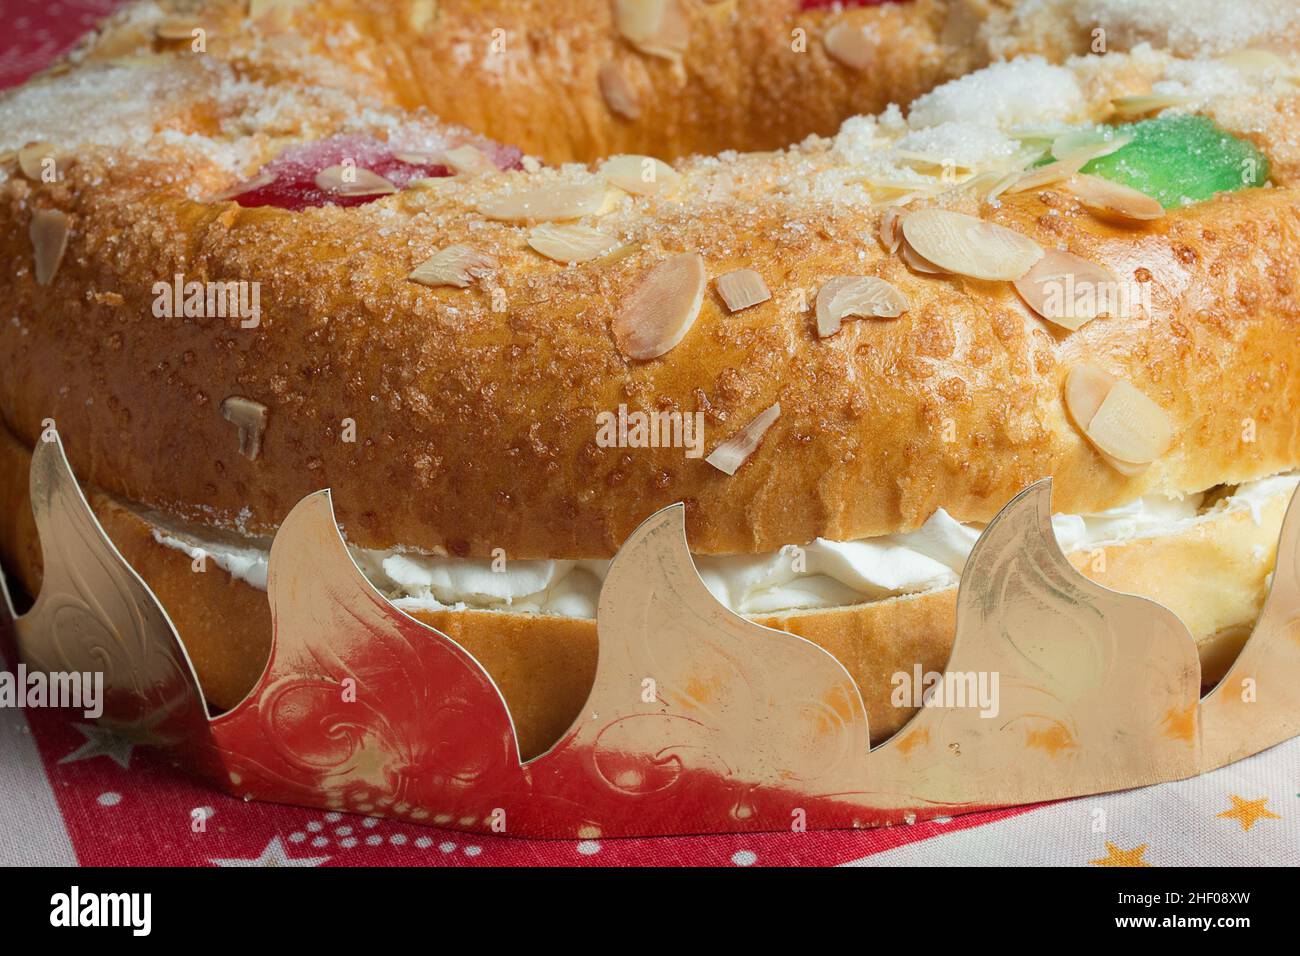 Nahaufnahme eines riesigen Donut-Kuchens, gefüllt mit süßer Schlagsahne und Baiser mit kandierten Früchten, Mandeln und Puderzucker, umgeben von der Traditiona Stockfoto